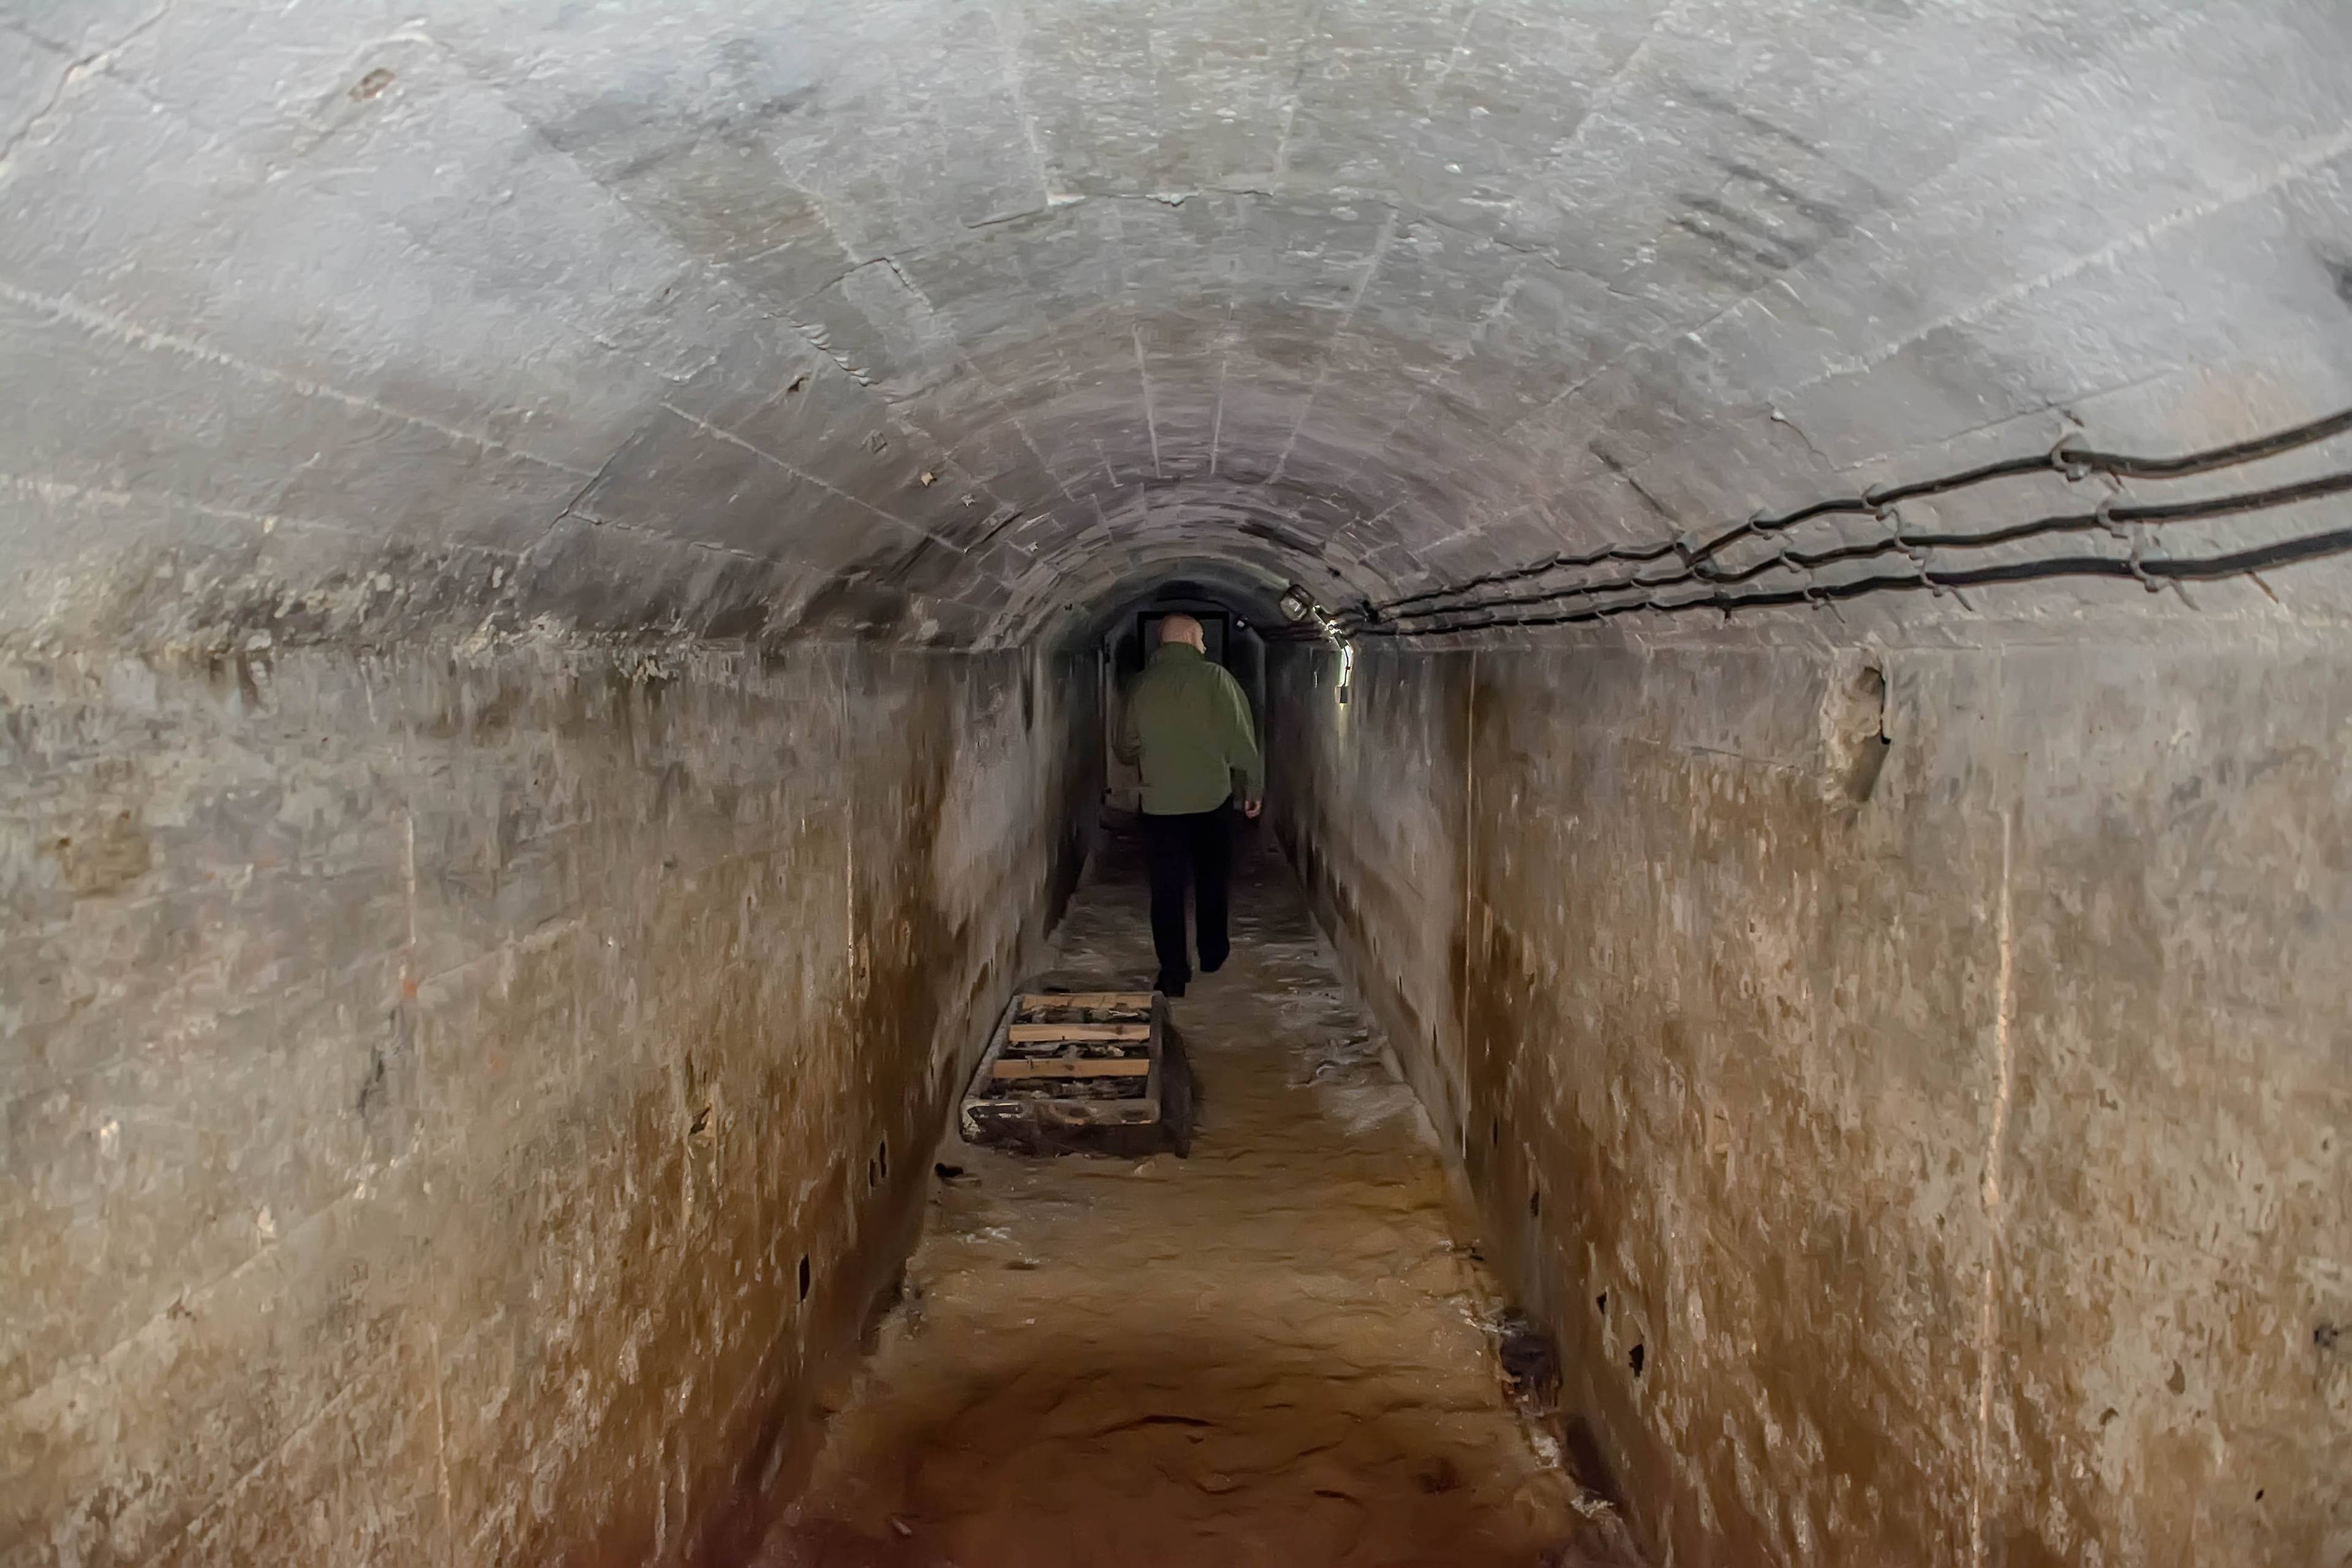 Nioski piwniczny korytarz, widać sylwetkę człowieka idącego korytarzem